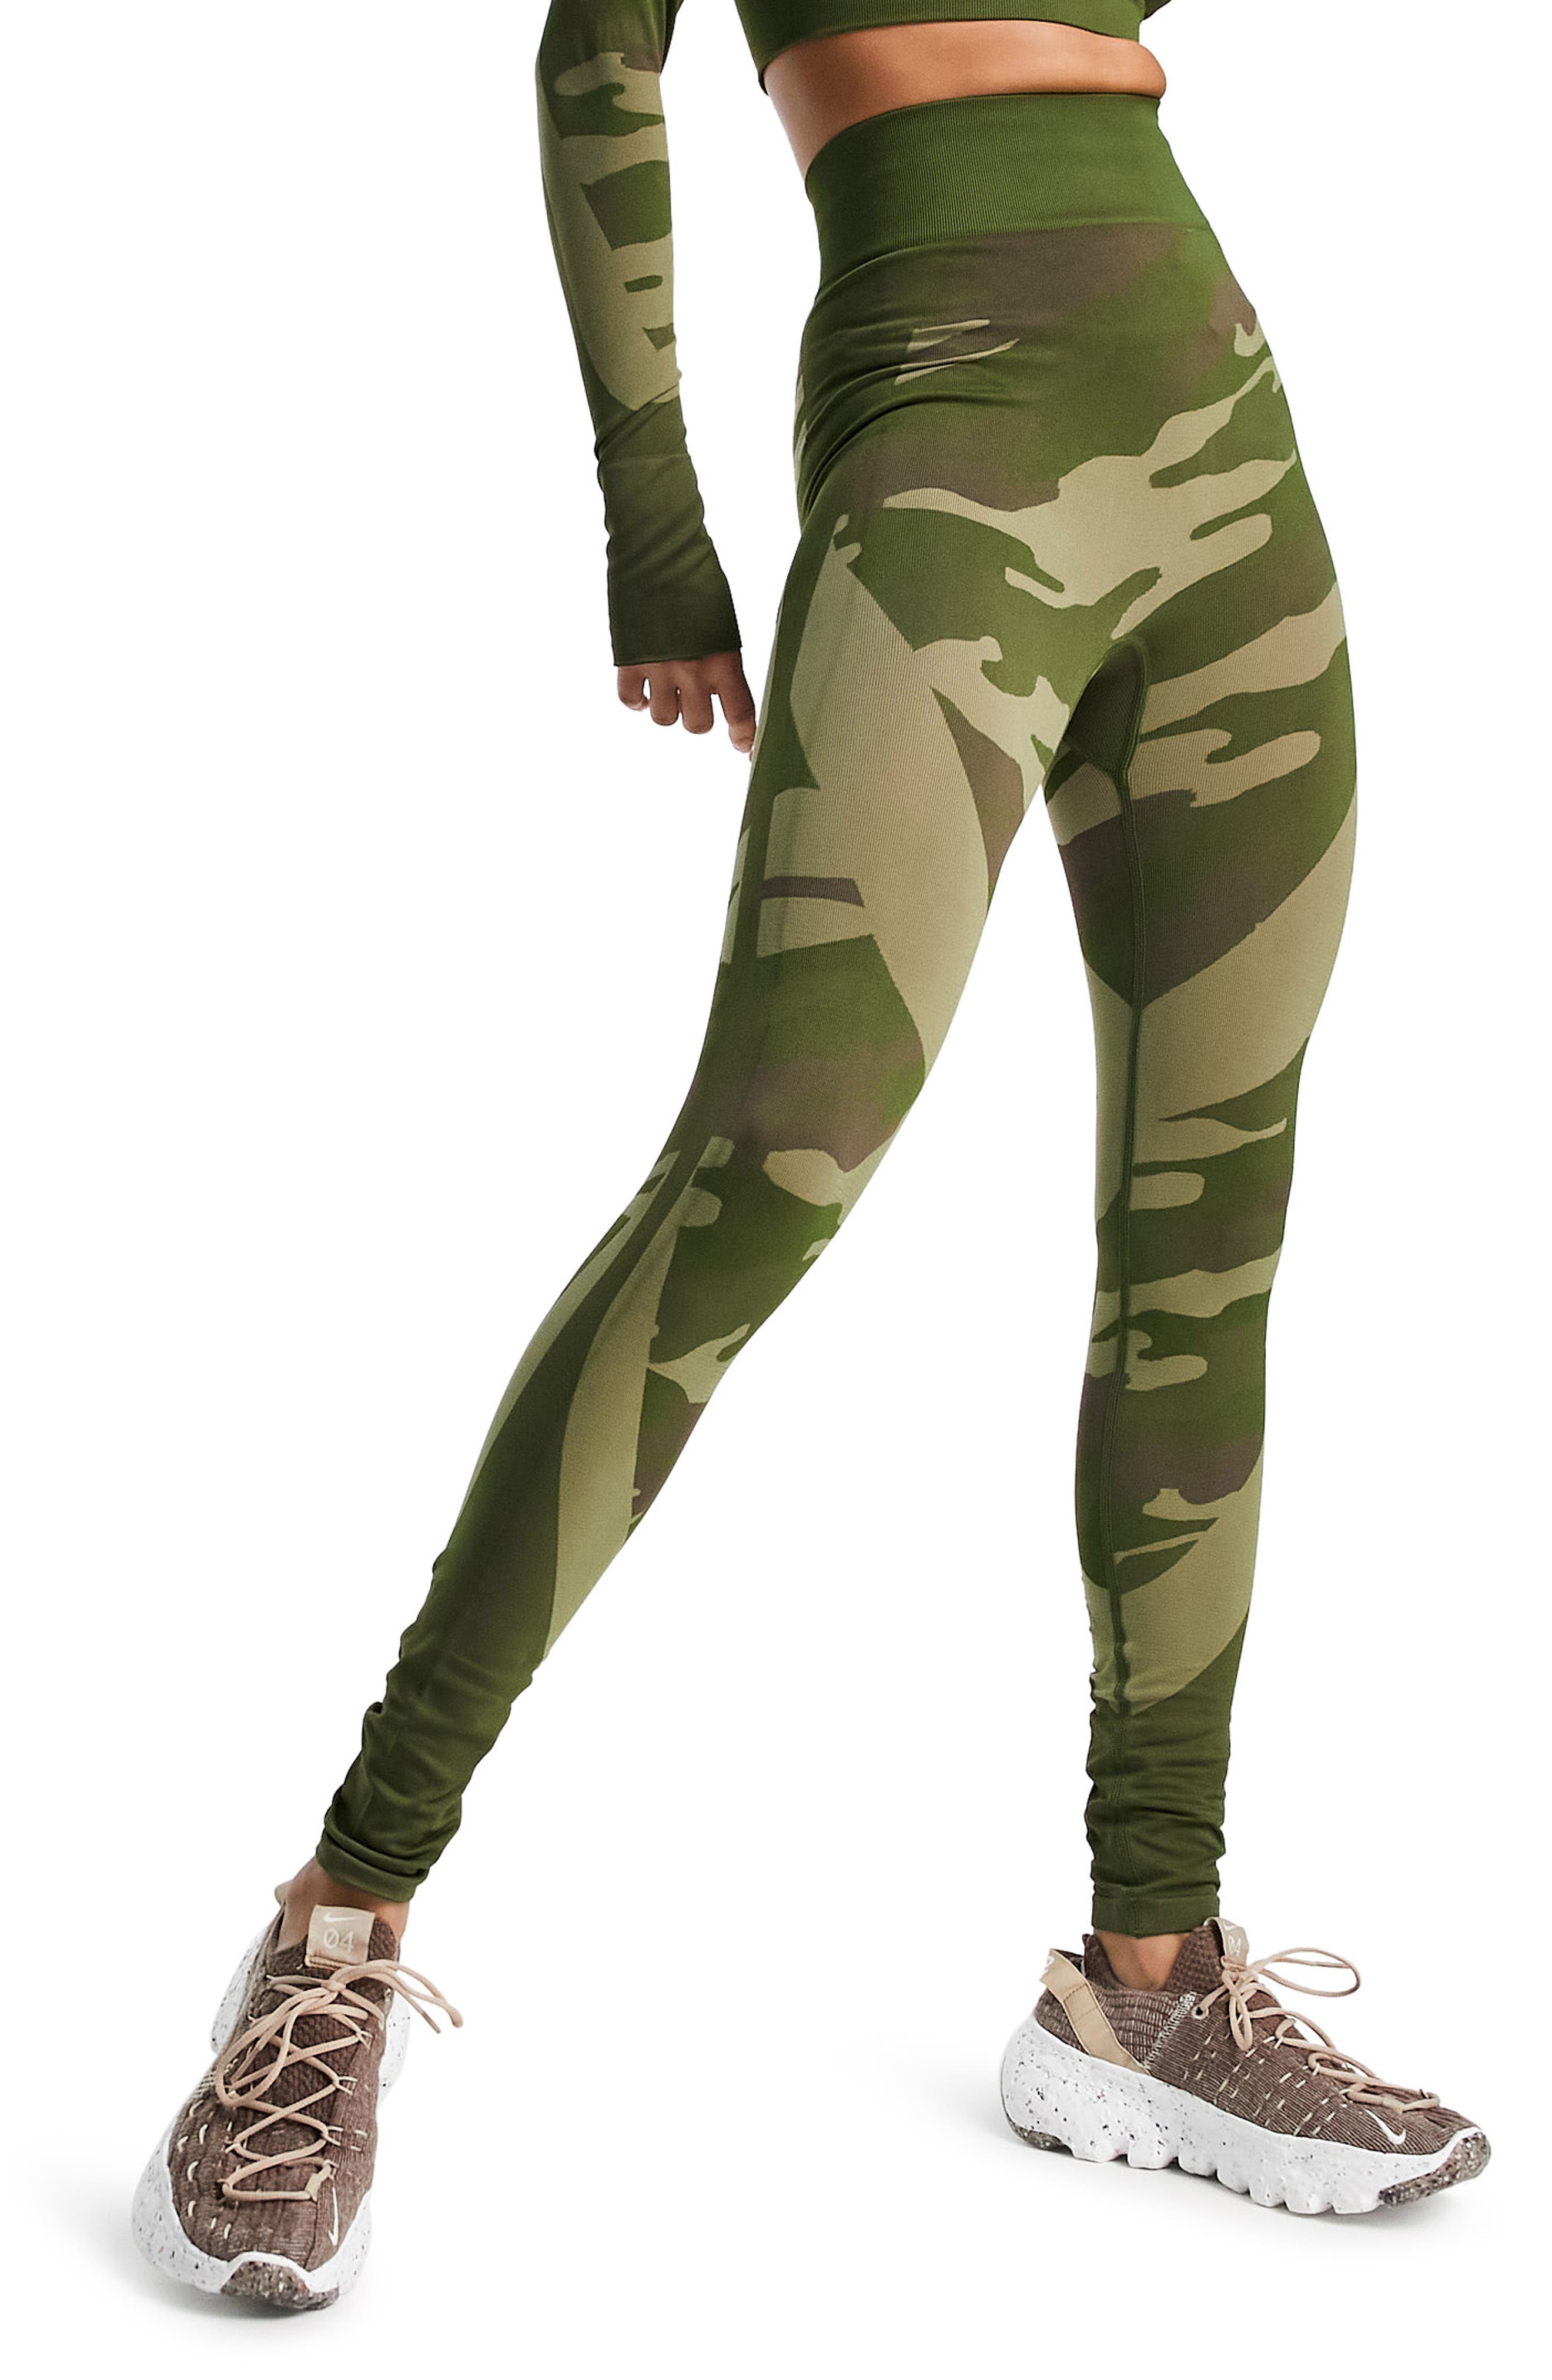 Women's Camouflage Stretch Denim Skinny Jeans XS/S/M/L/XL 